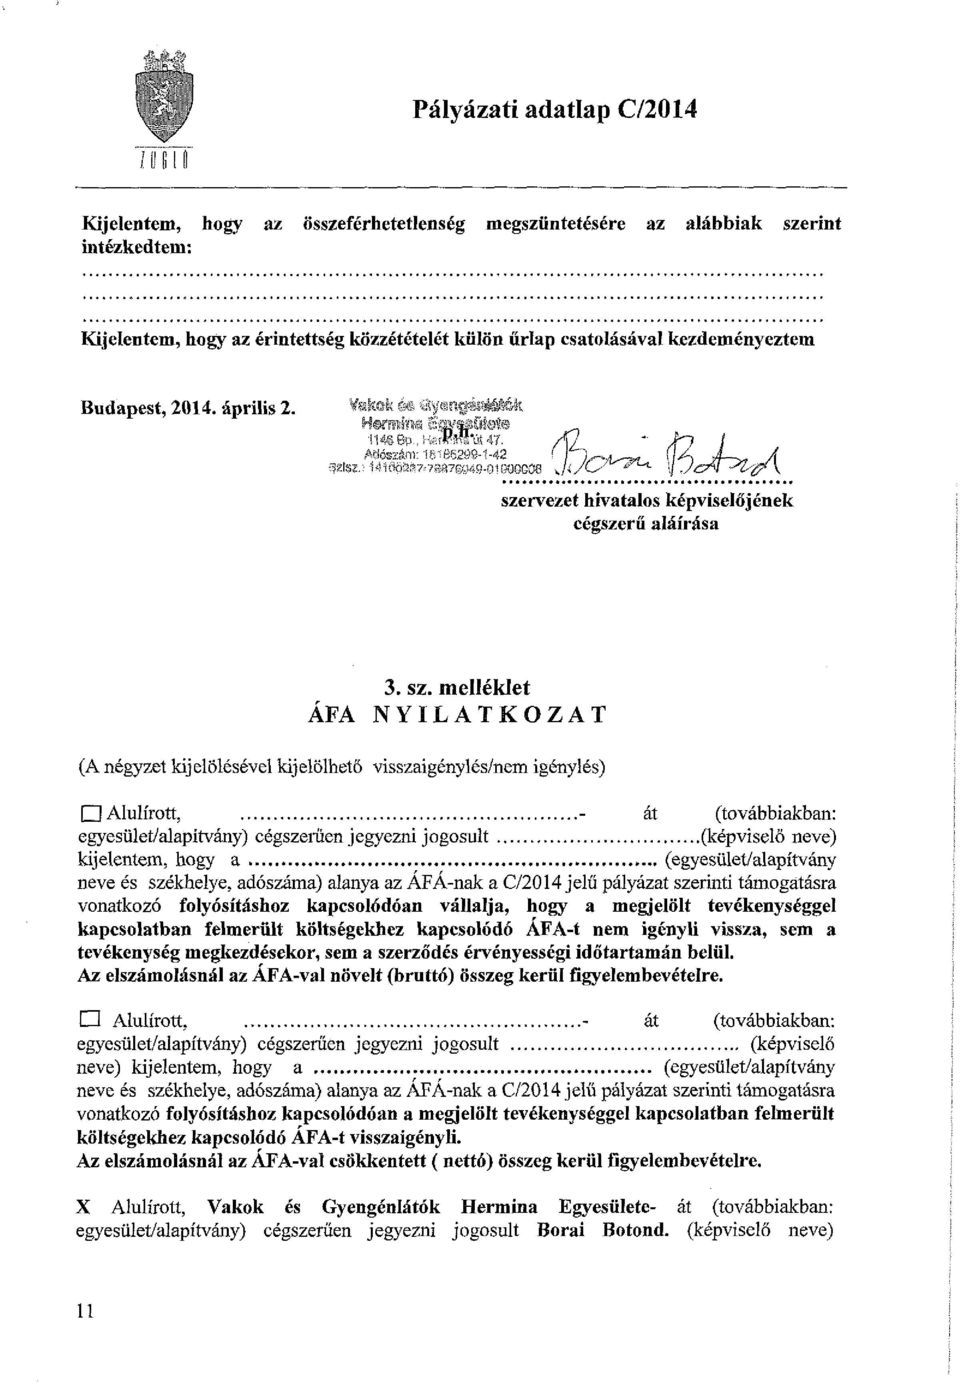 rvezet hivatalos képviselőjének cégszerű aláírása ÁFA 3. sz.